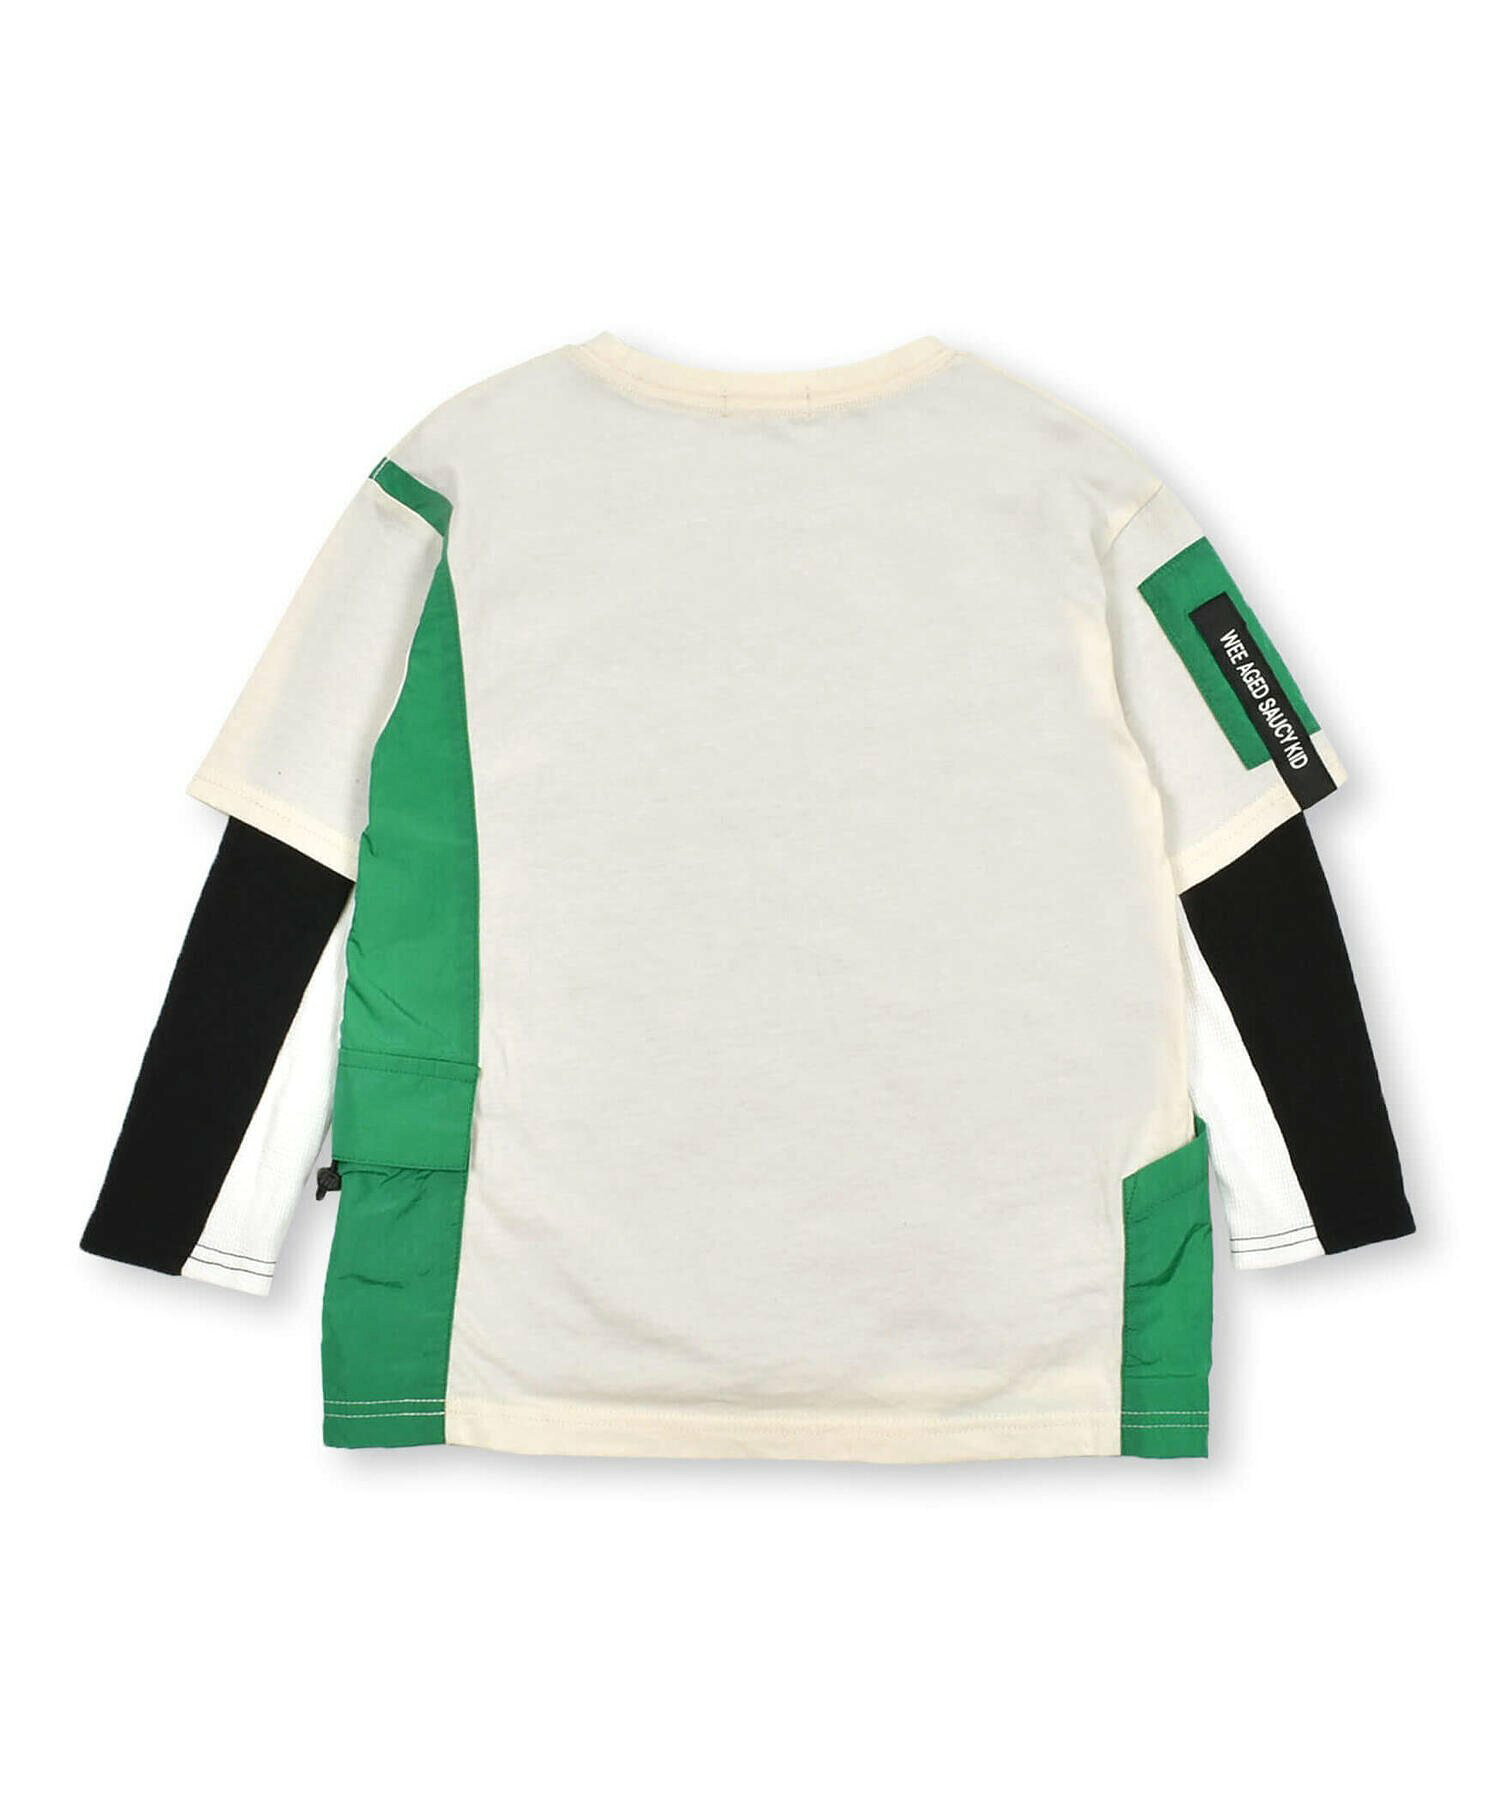 異素材ポケットTシャツ+ラインロゴ天竺Tシャツセット(100~160cm)